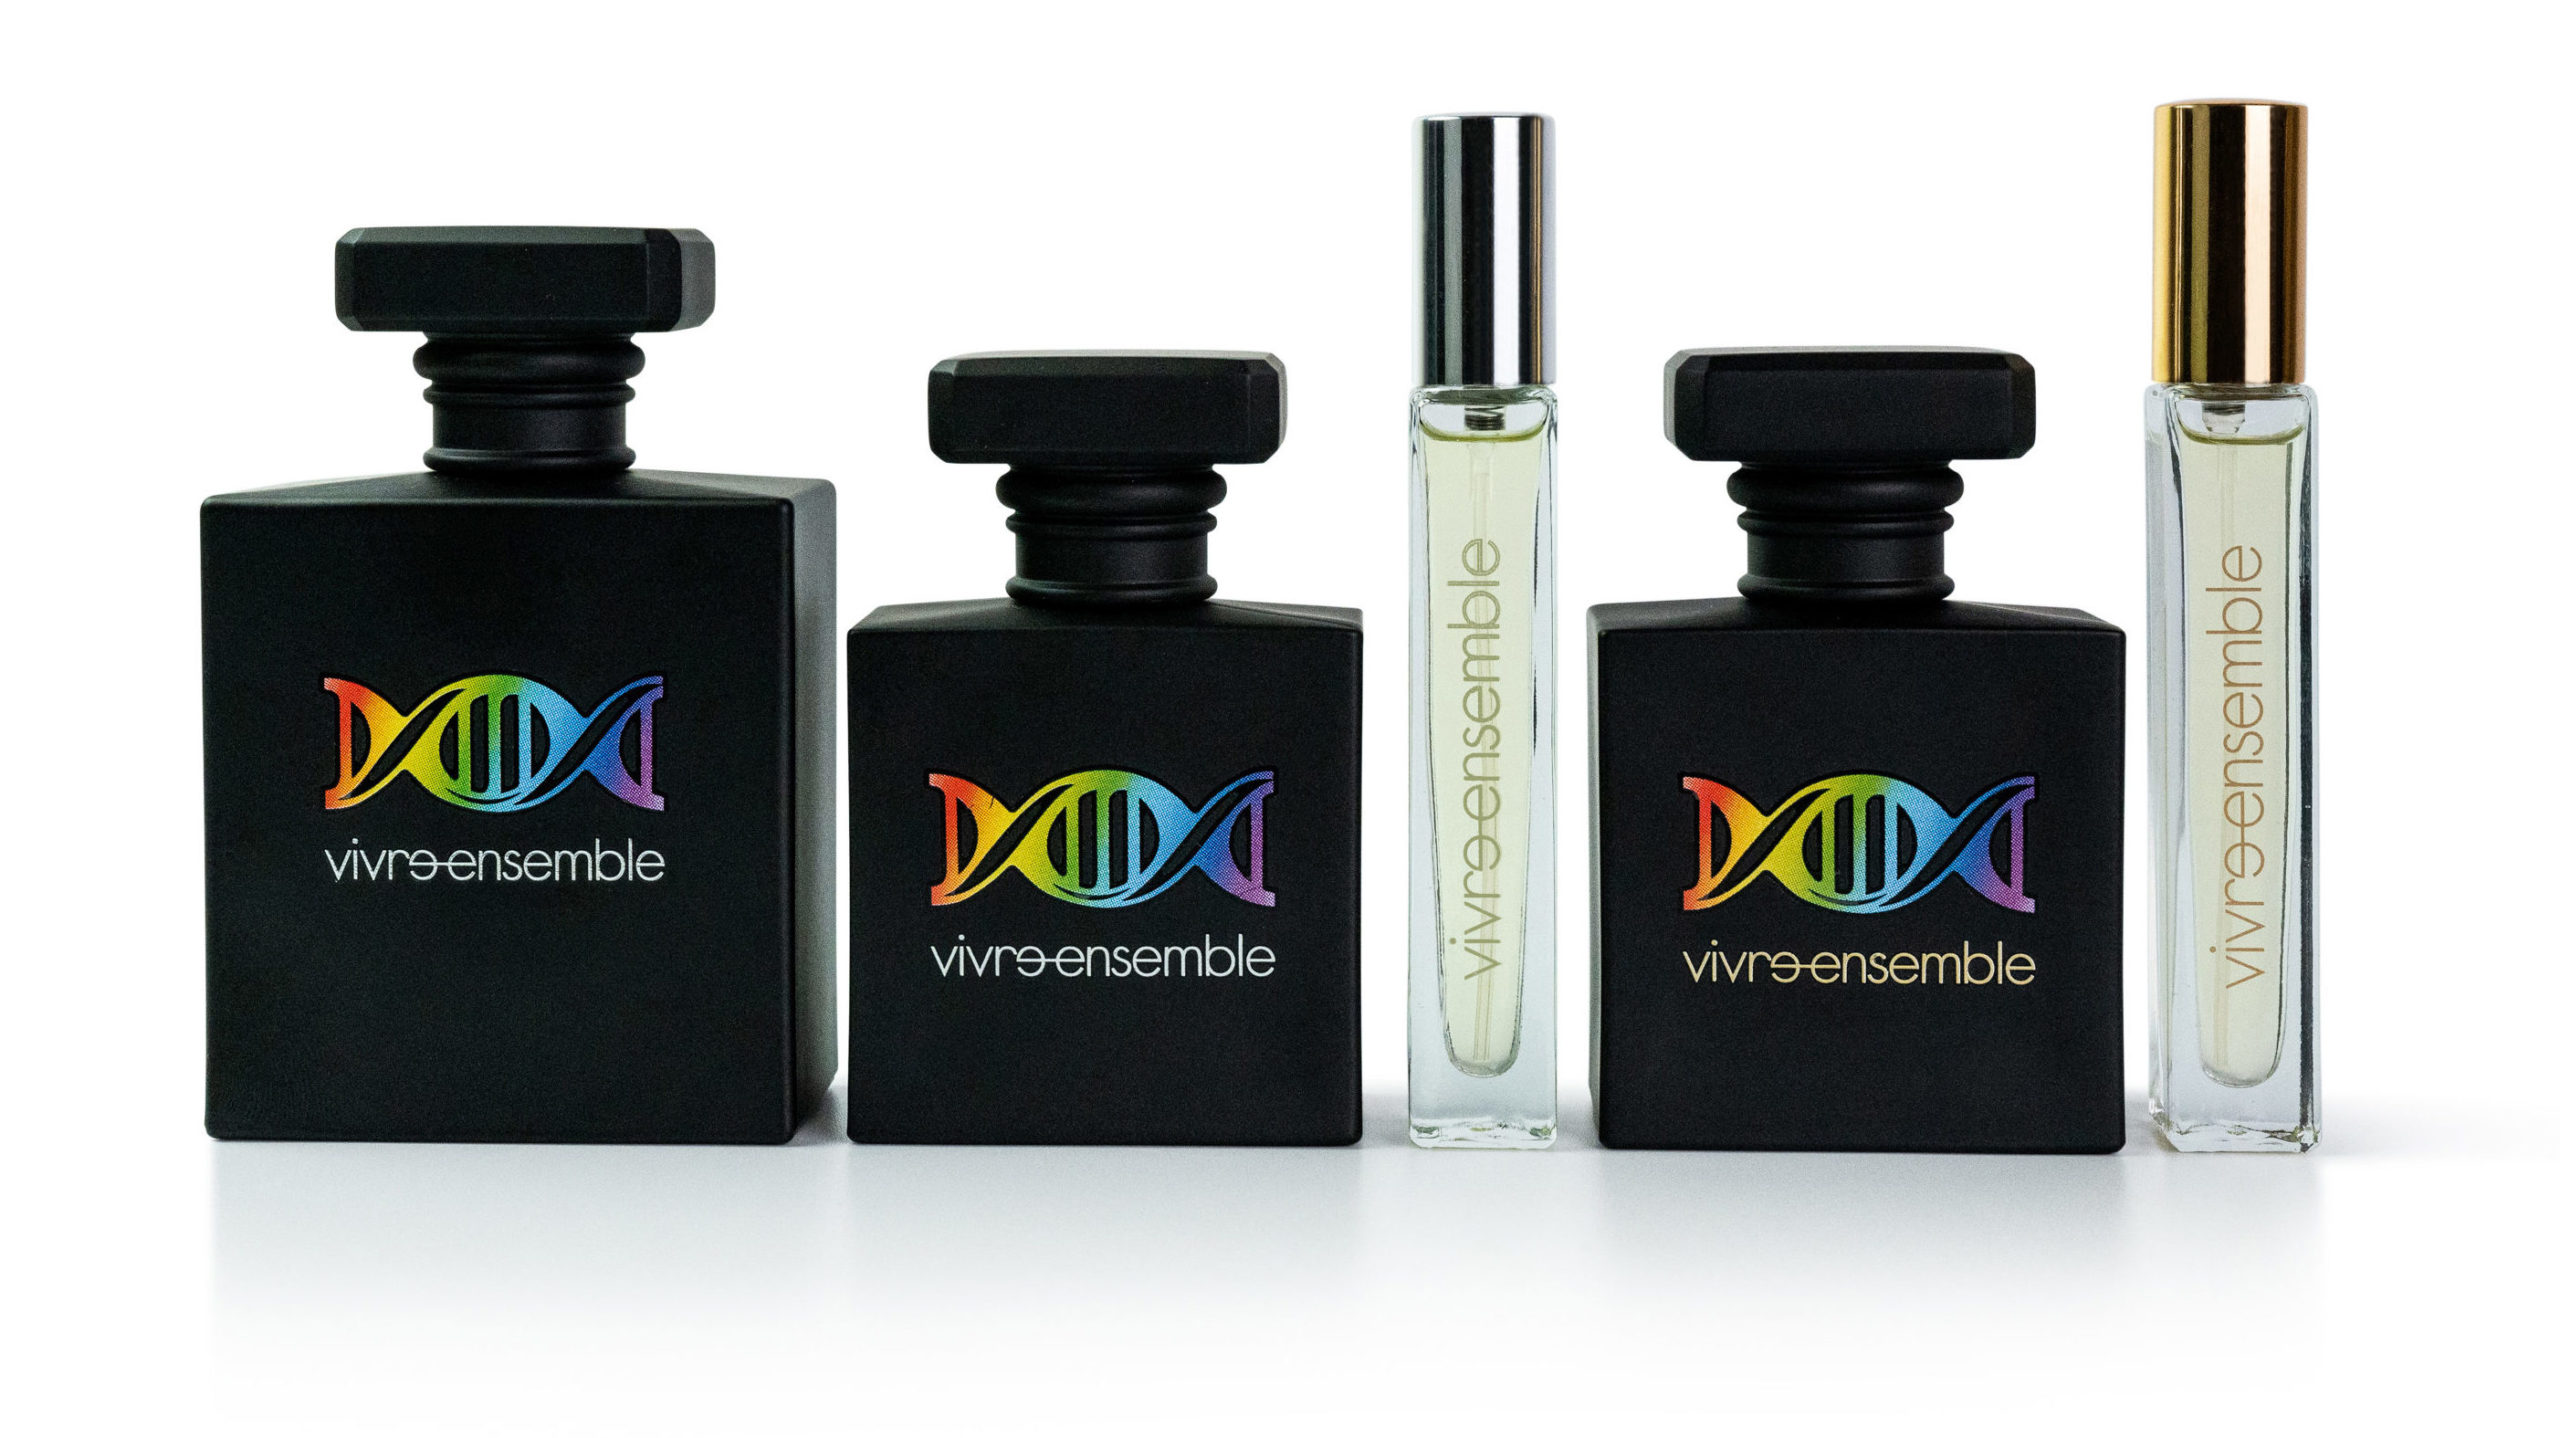 Gamme de parfums Vivre Ensemble 100% naturels. Oud et Sublime dans leurs différentes contenances.